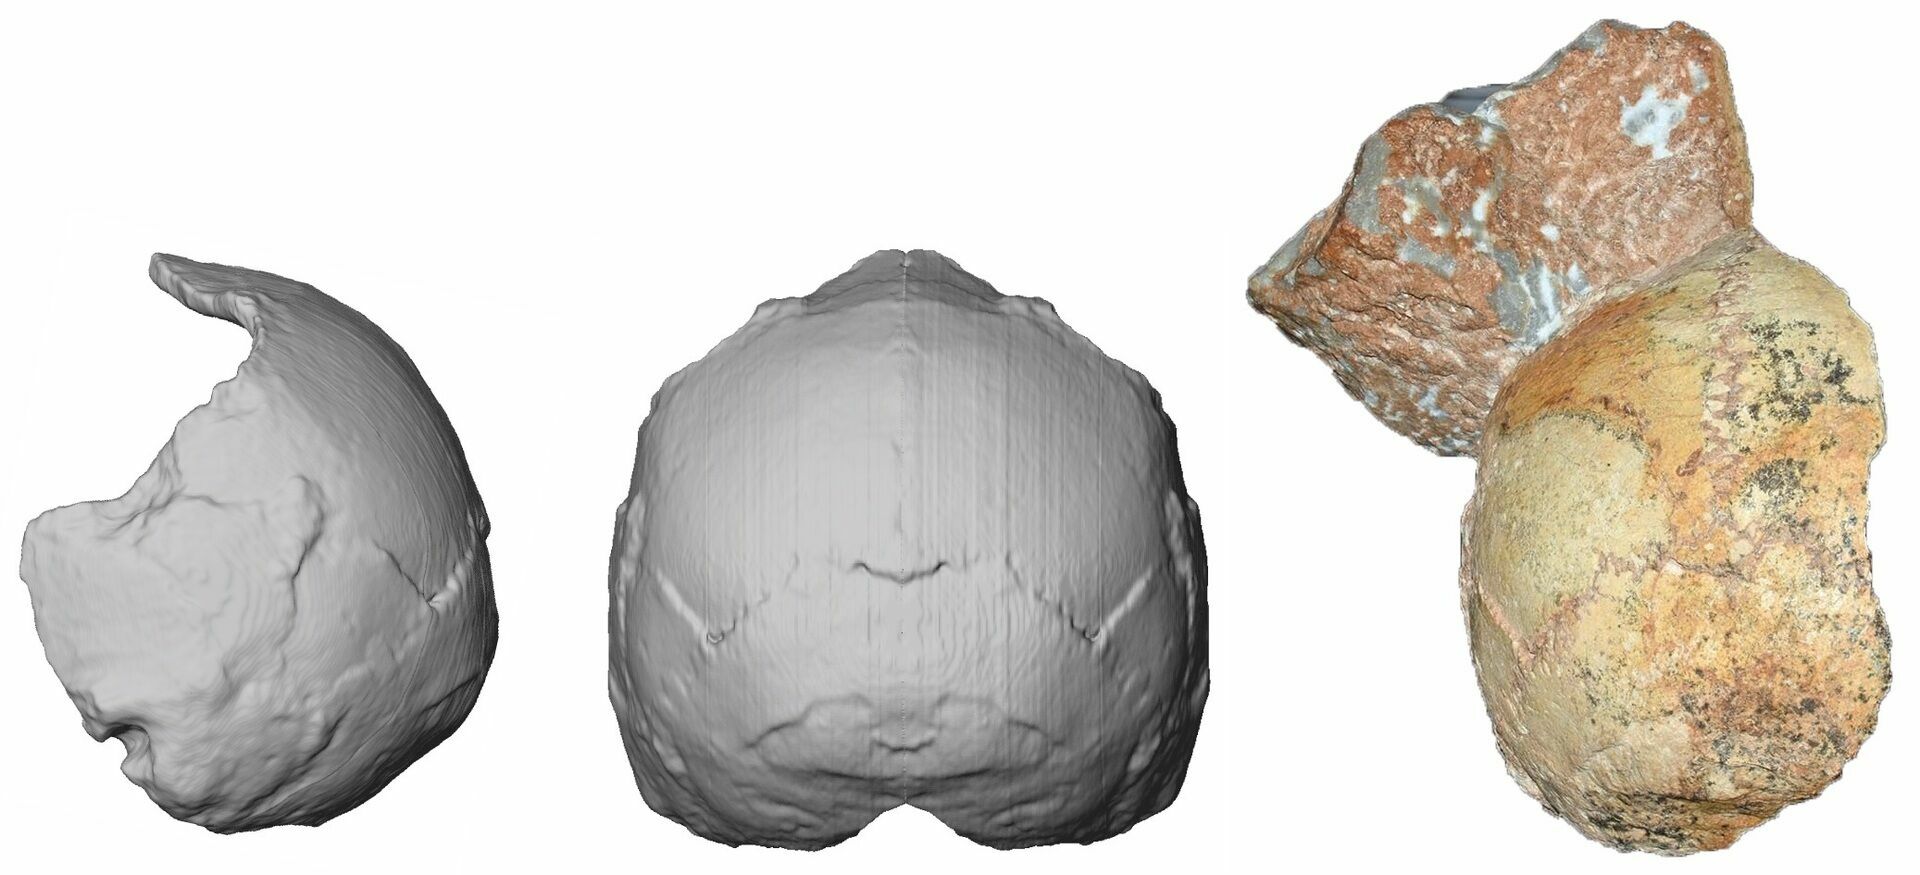 Фрагмент самого древнего человеческого черепа, найденного на территории Евразии (справа), и его виртуальная реконструкция (в центре и слева).